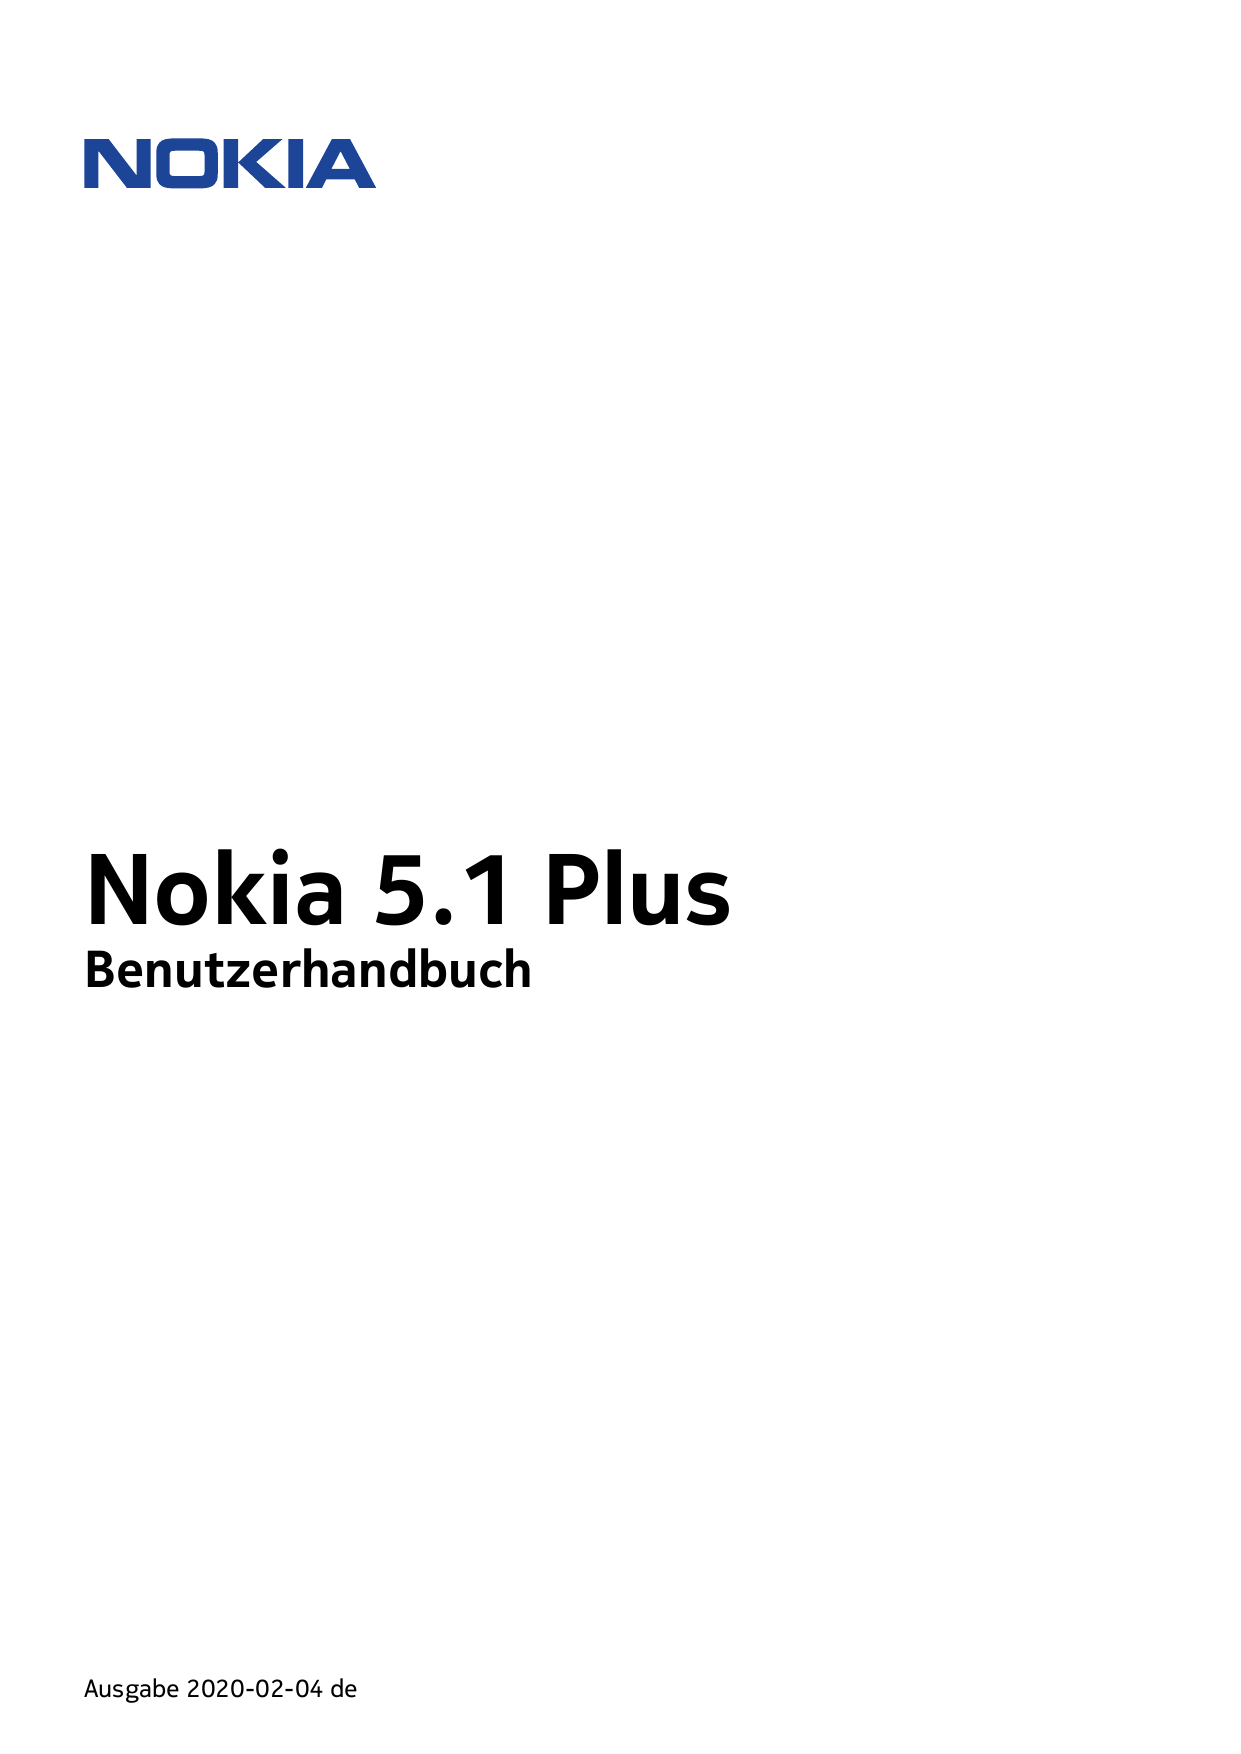 Nokia 5.1 PlusBenutzerhandbuchAusgabe 2020-02-04 de